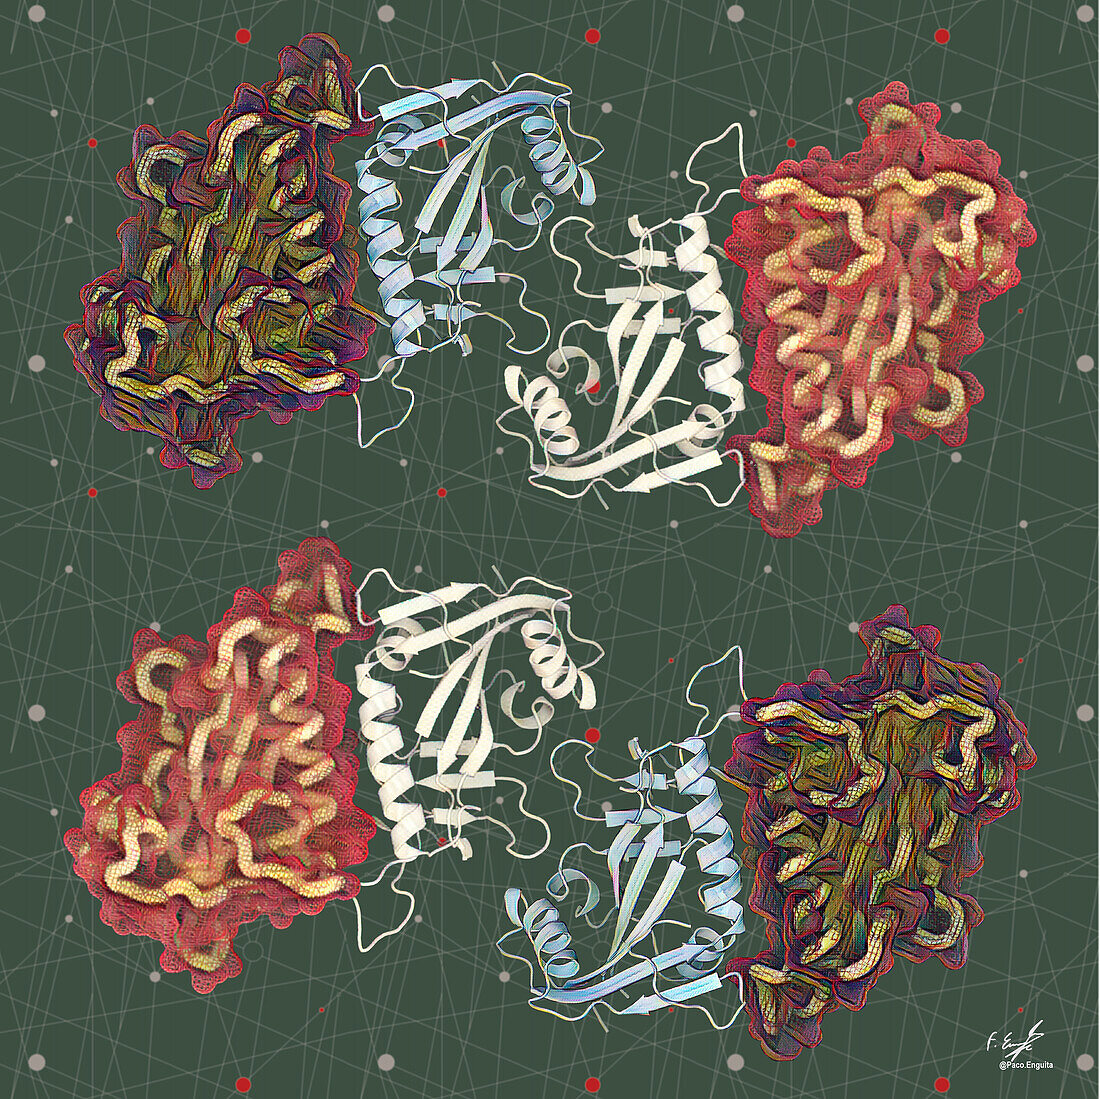 PARP15 DNA repair protein, illustration